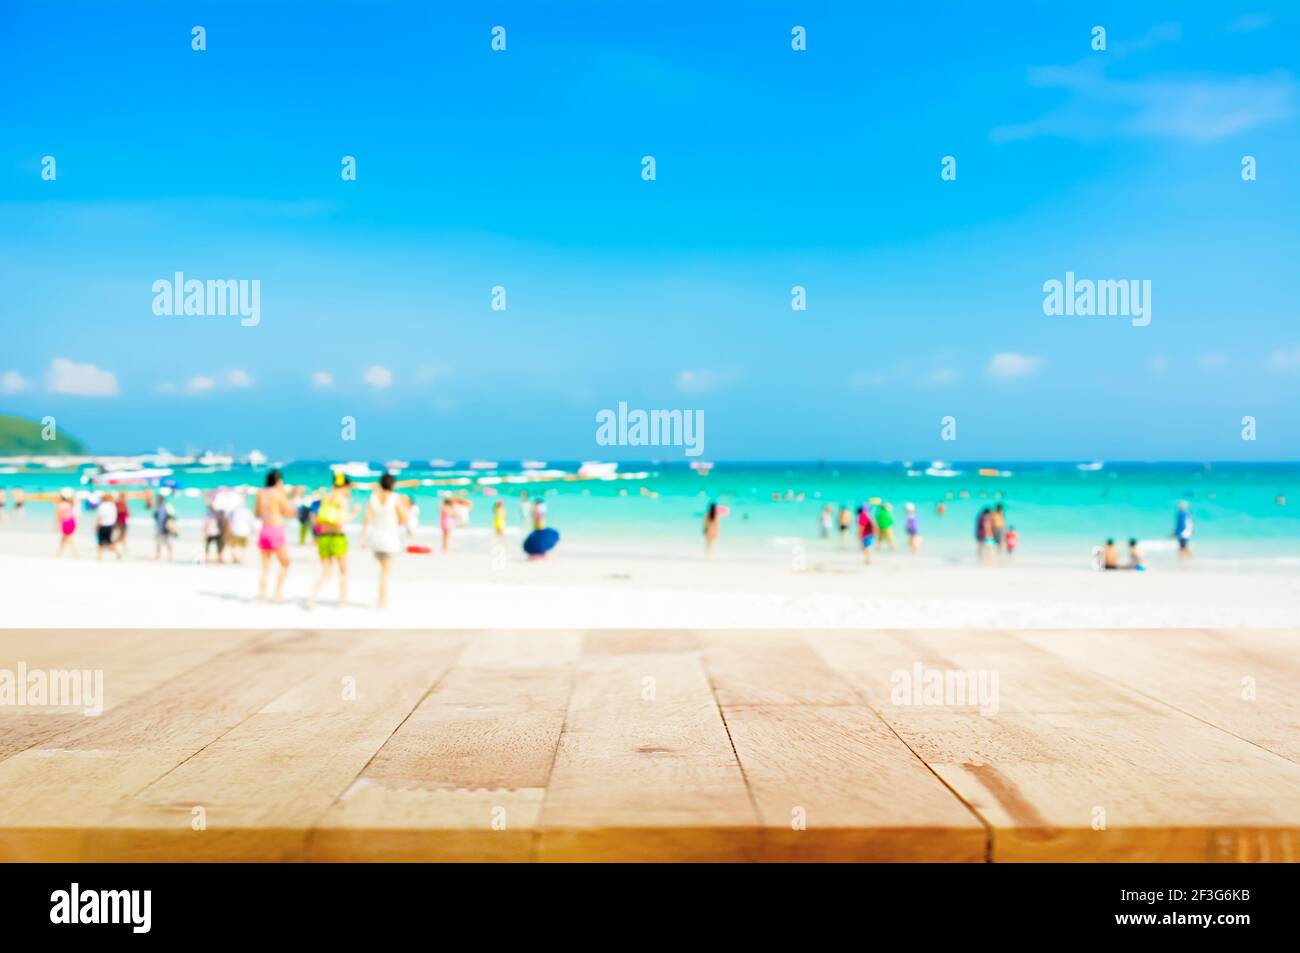 Holztischplatte auf verschwommenem Strand Hintergrund mit Menschen in Bunte Kleidung - kann für die Anzeige oder Montage verwendet werden Ihre Produkte Stockfoto